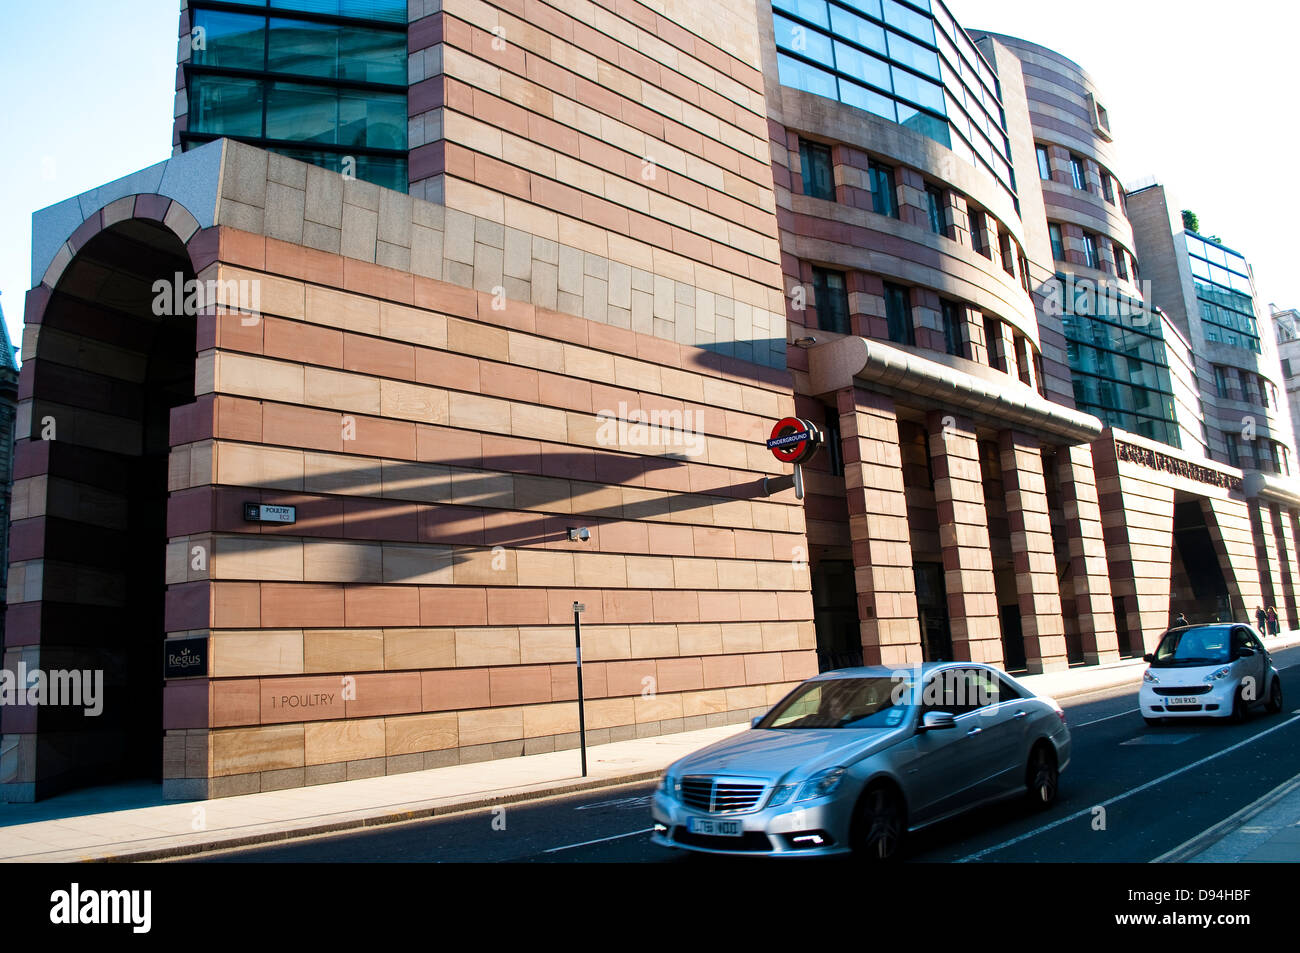 L'espace de bureau Regus, no1 de la volaille, conçu dans le style d'architecture postmoderne par James Stirling, EC2, Londres, UK Banque D'Images